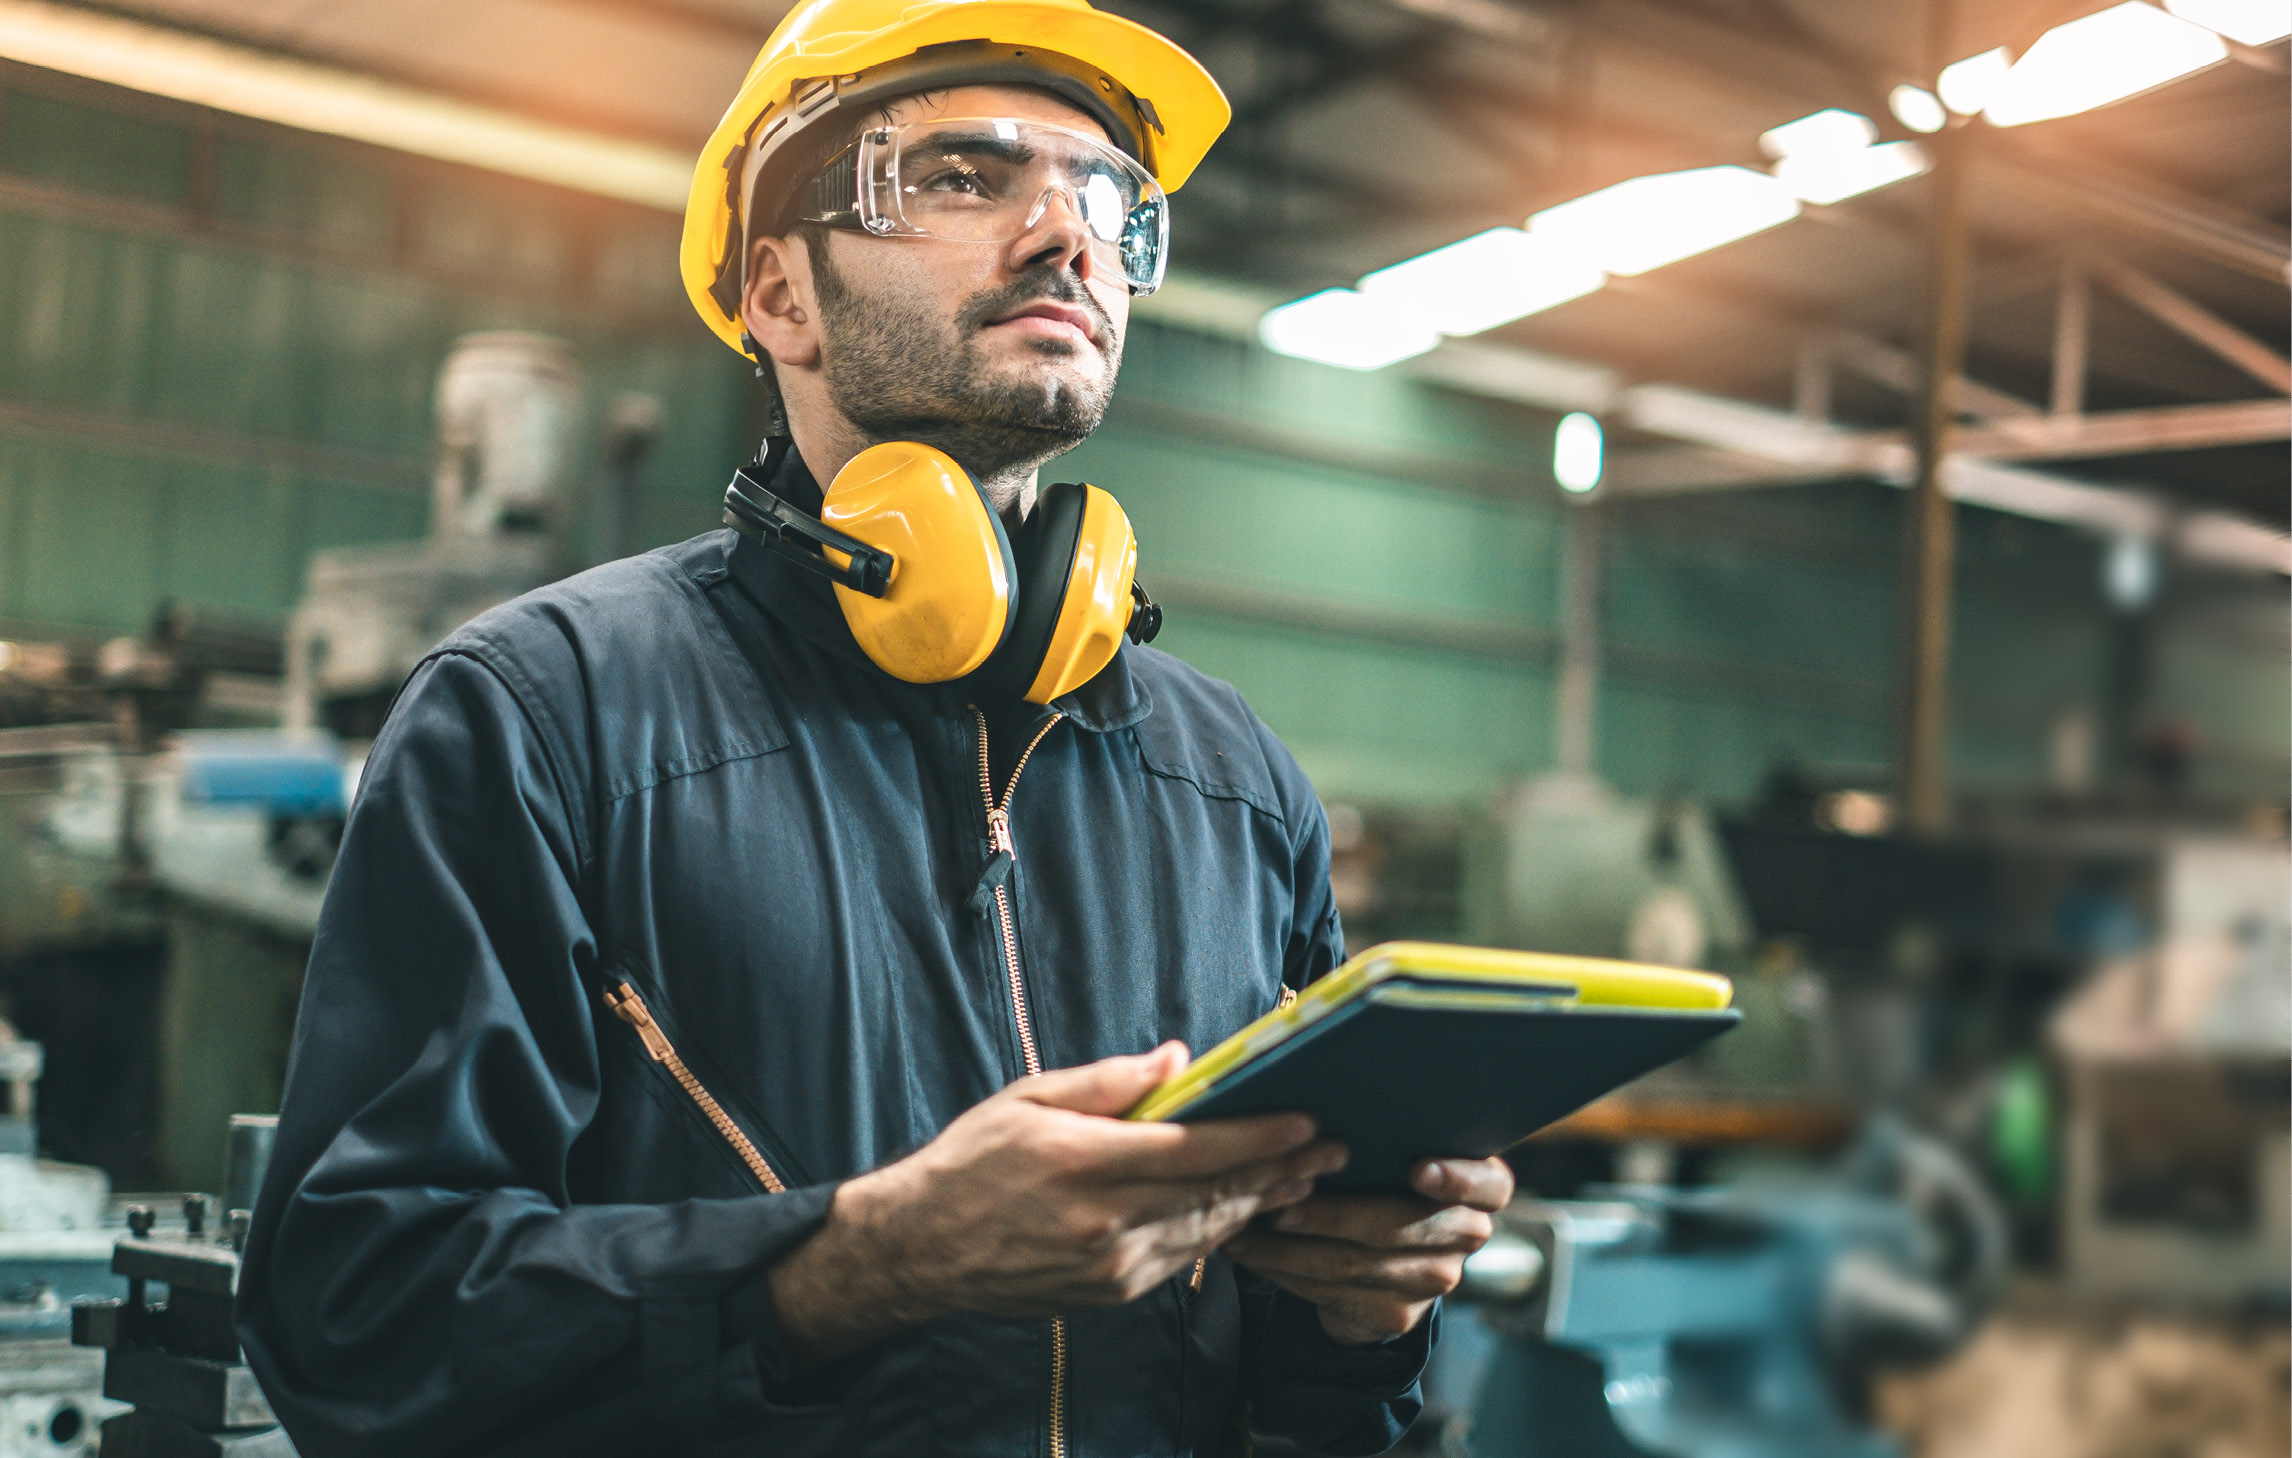 Ein Bauarbeiter steht mit einem Klemmbrett in einer Werkstatt. Er trägt einen Overall, Schutzbrille, Helm und Kapselgehörschutz um den Hals